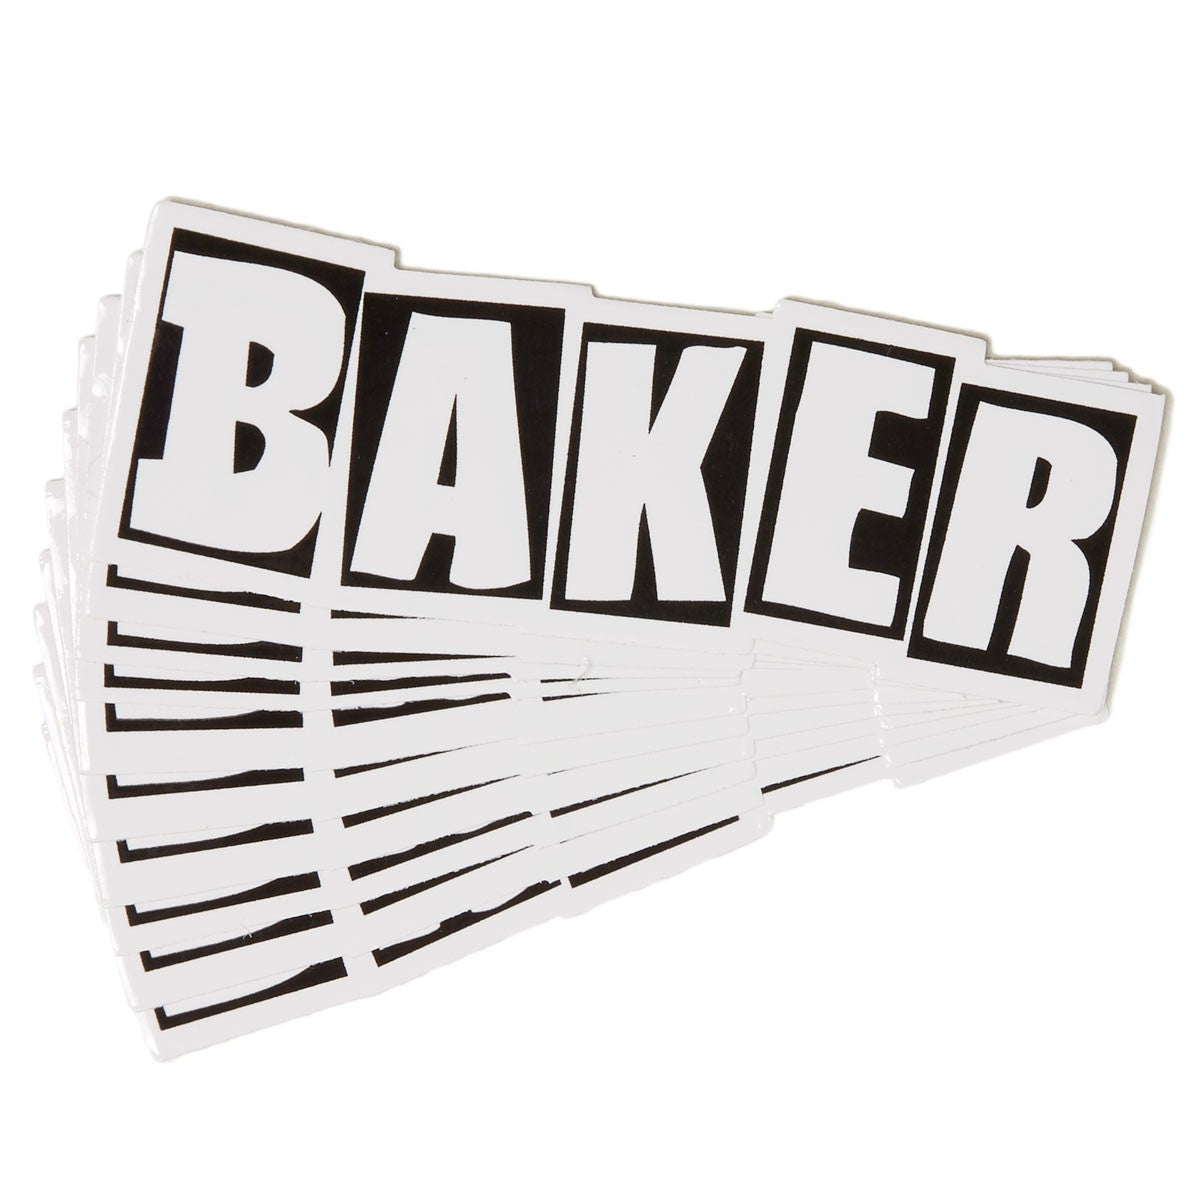 Baker Skateboards Sticker